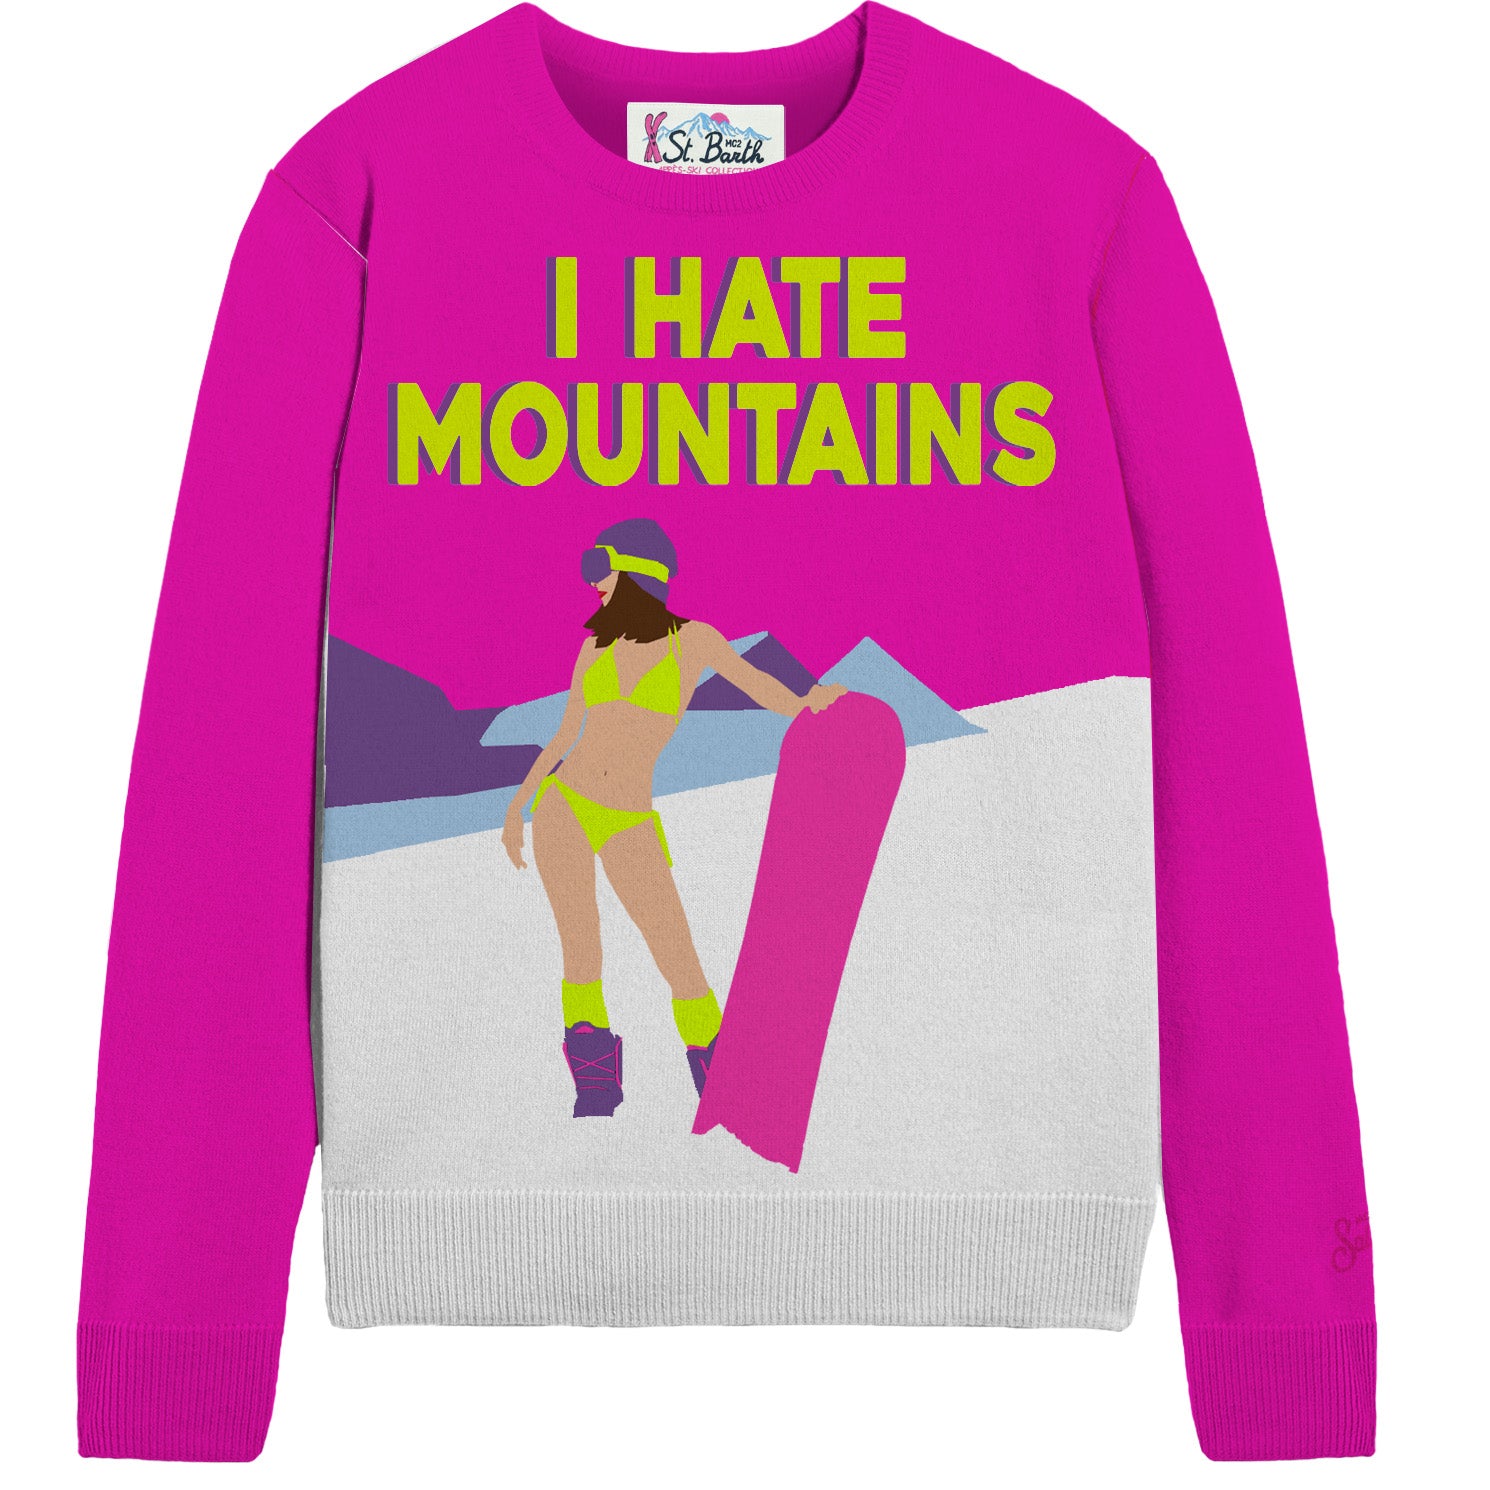 New Queen Hate Girl Women's Sweater